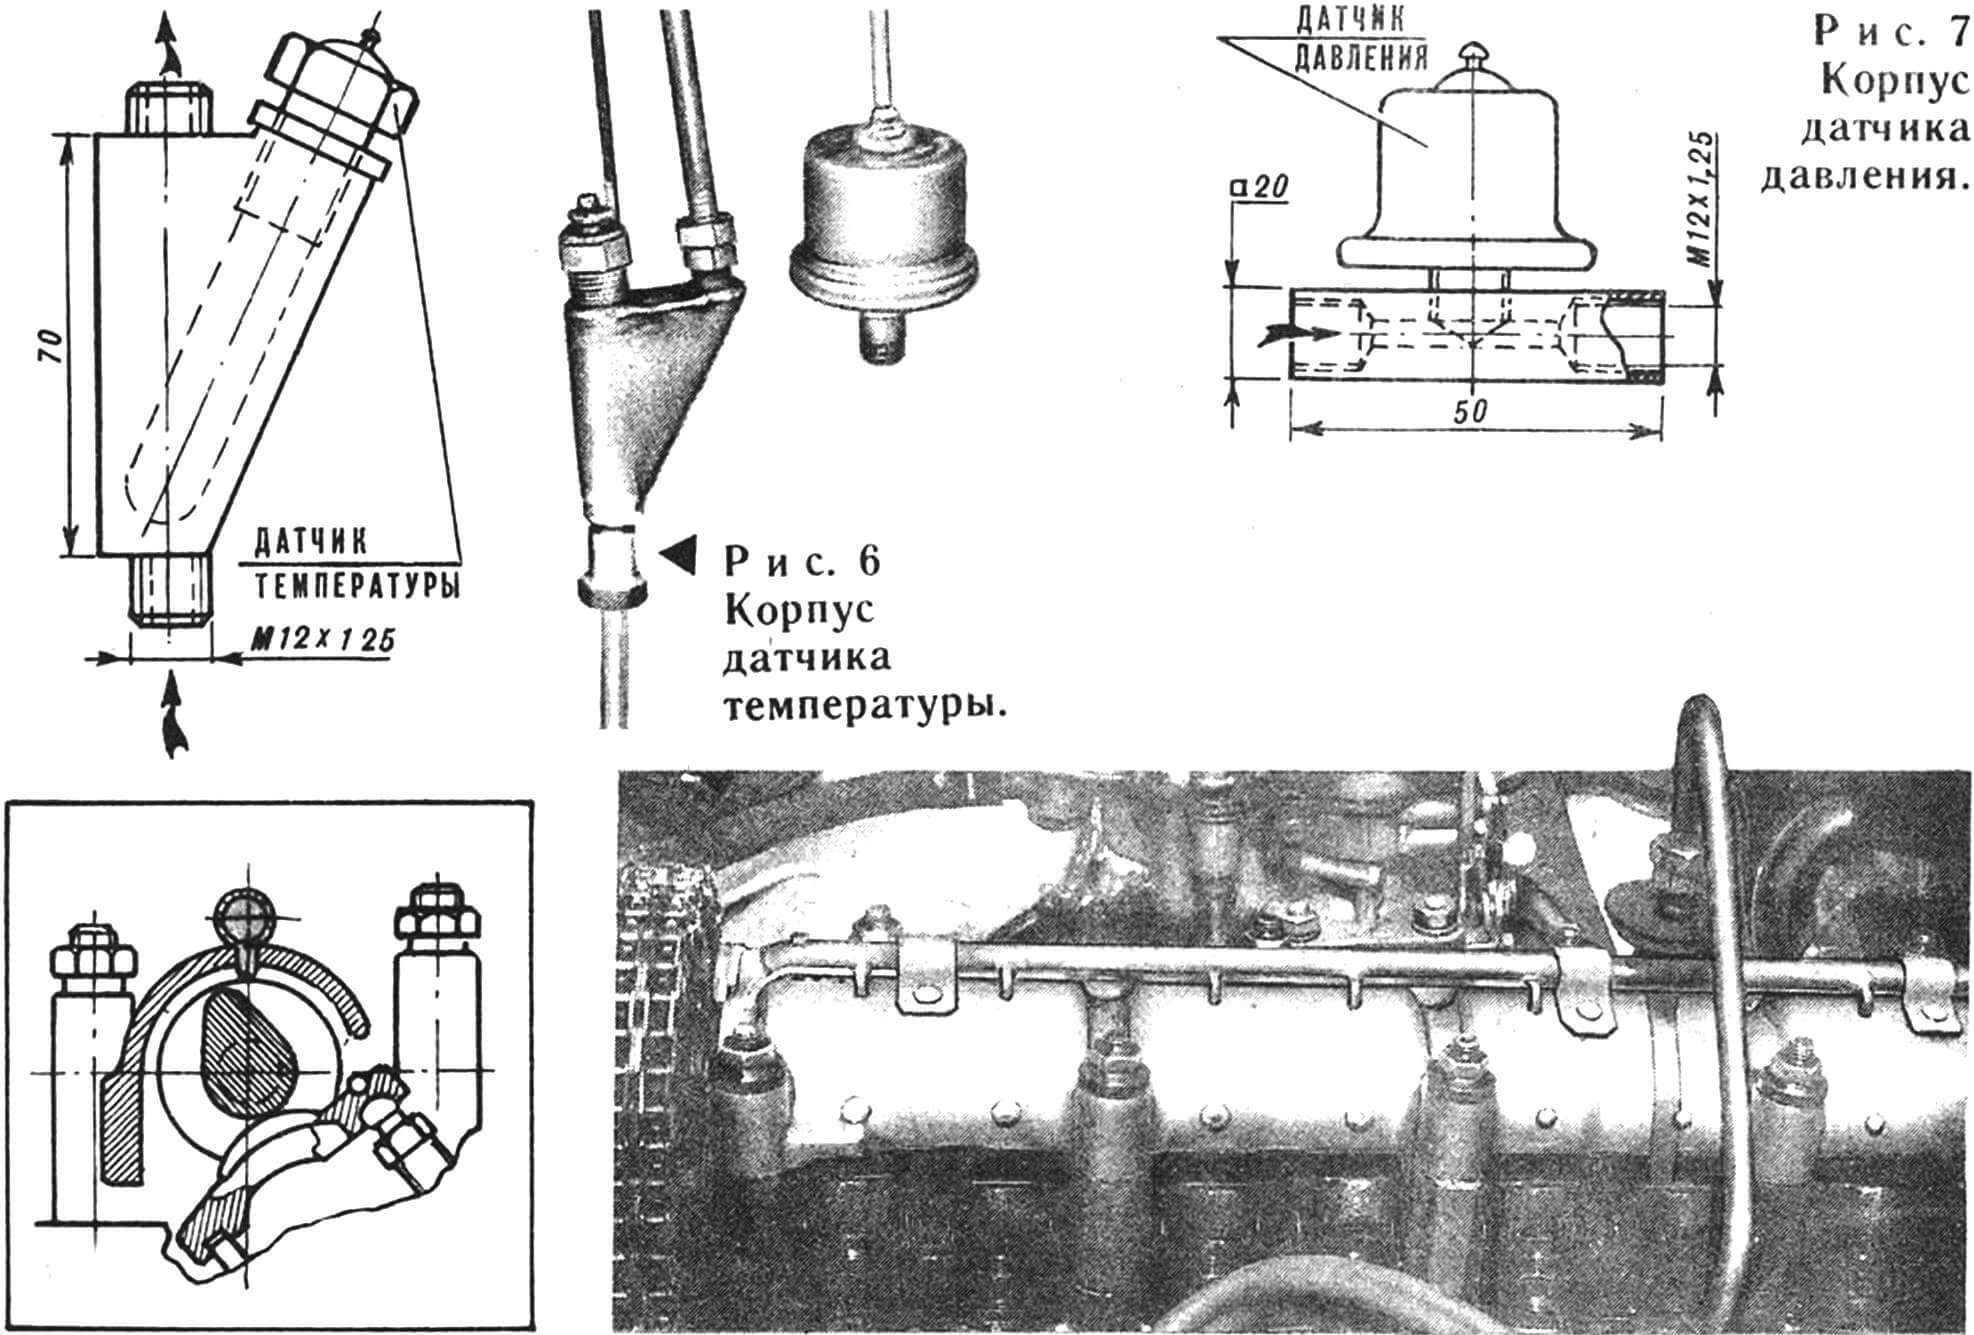 Рис. 8. Установка трубопровода с форсунками на двигатель.